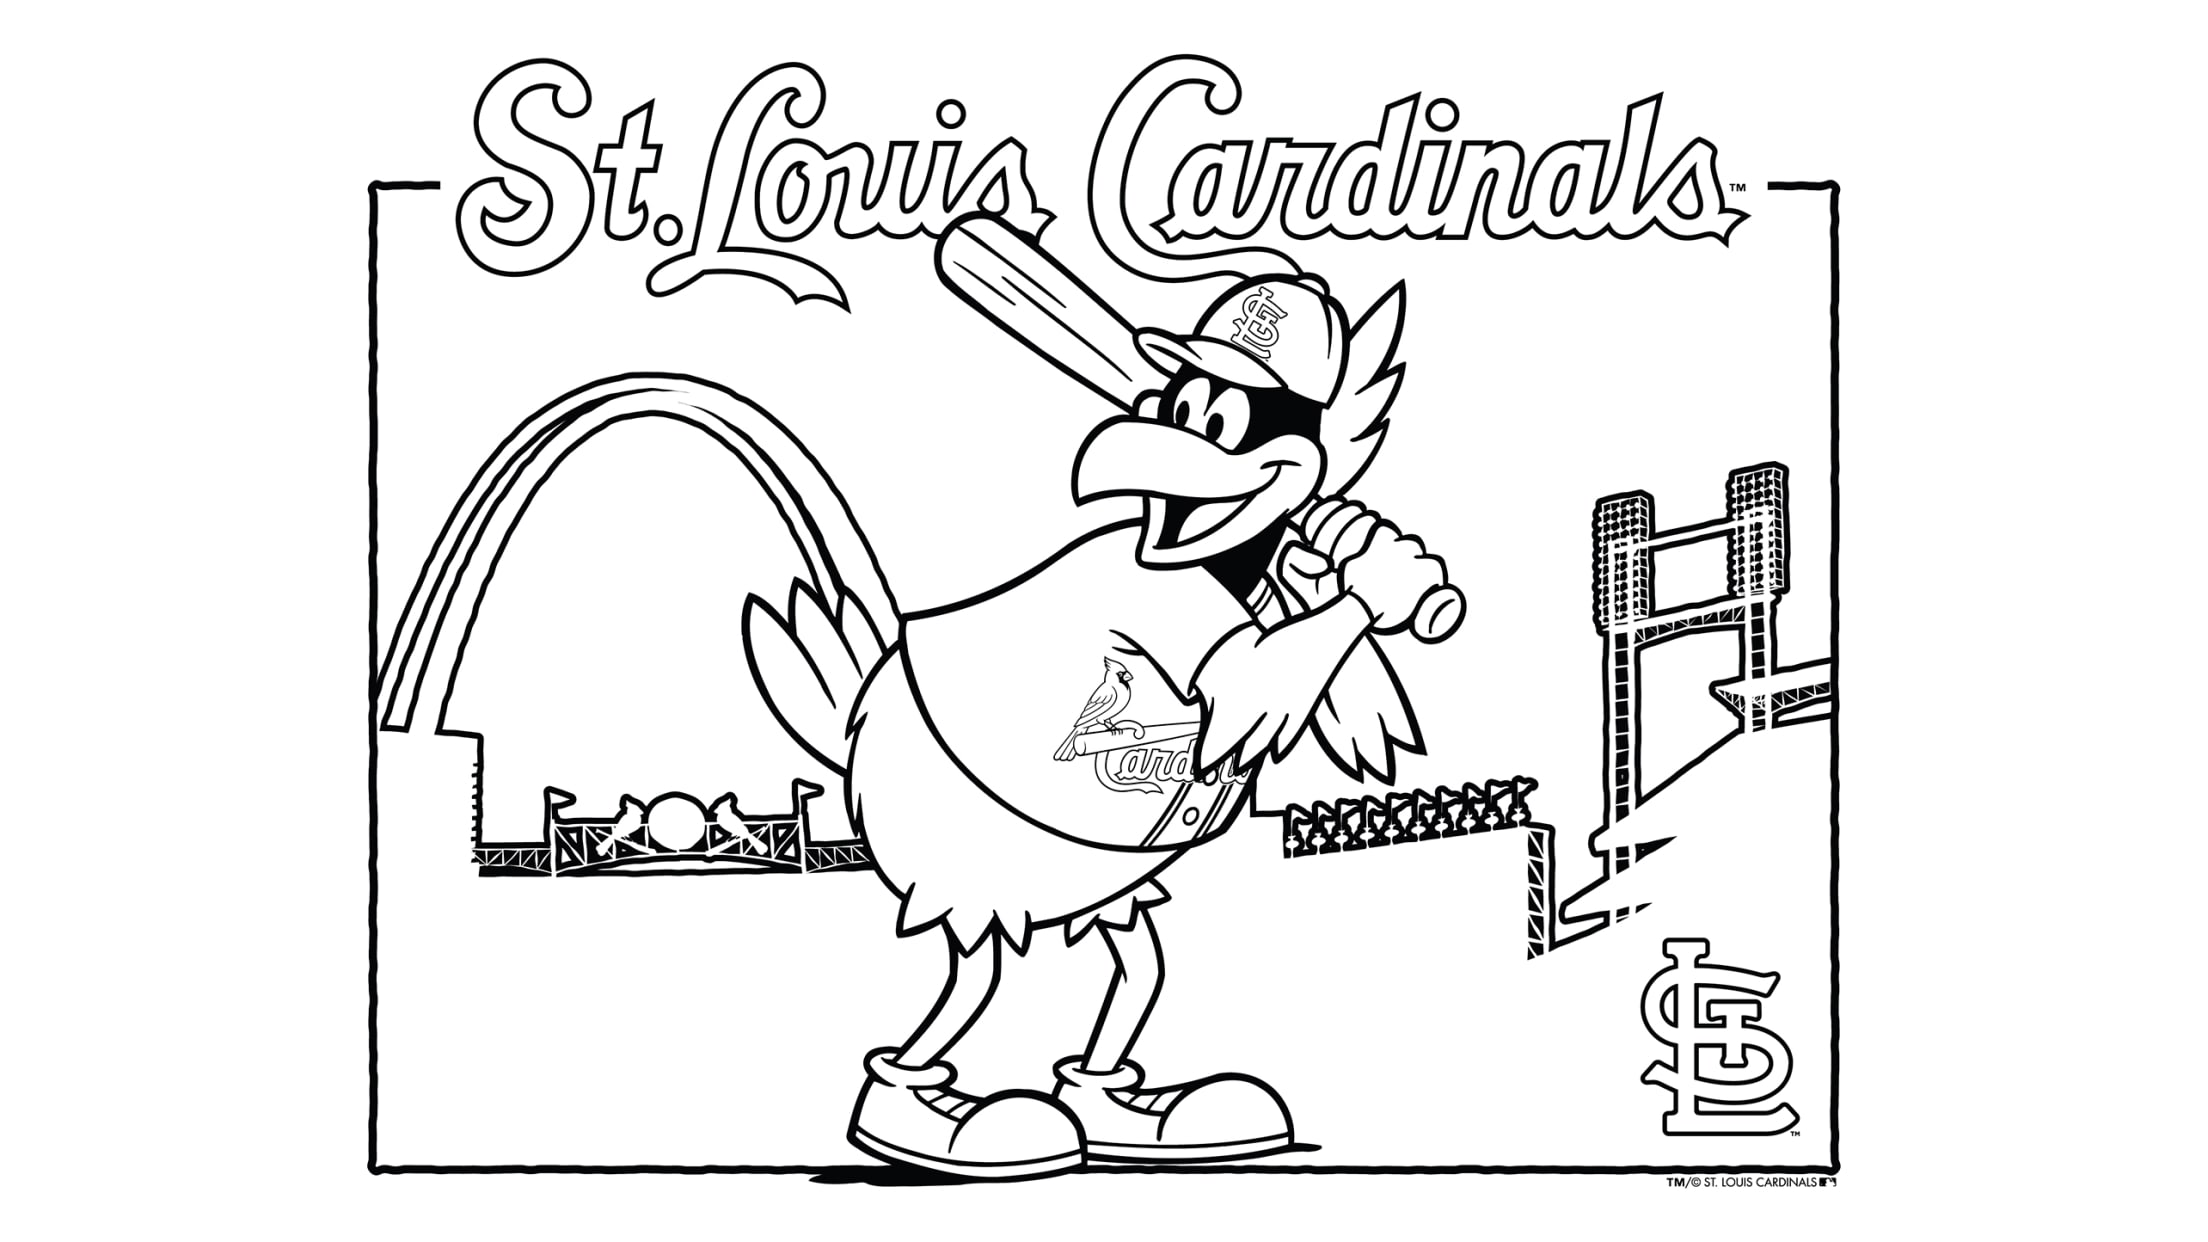 How to Draw St. Louis Cardinals, Baseball Logos